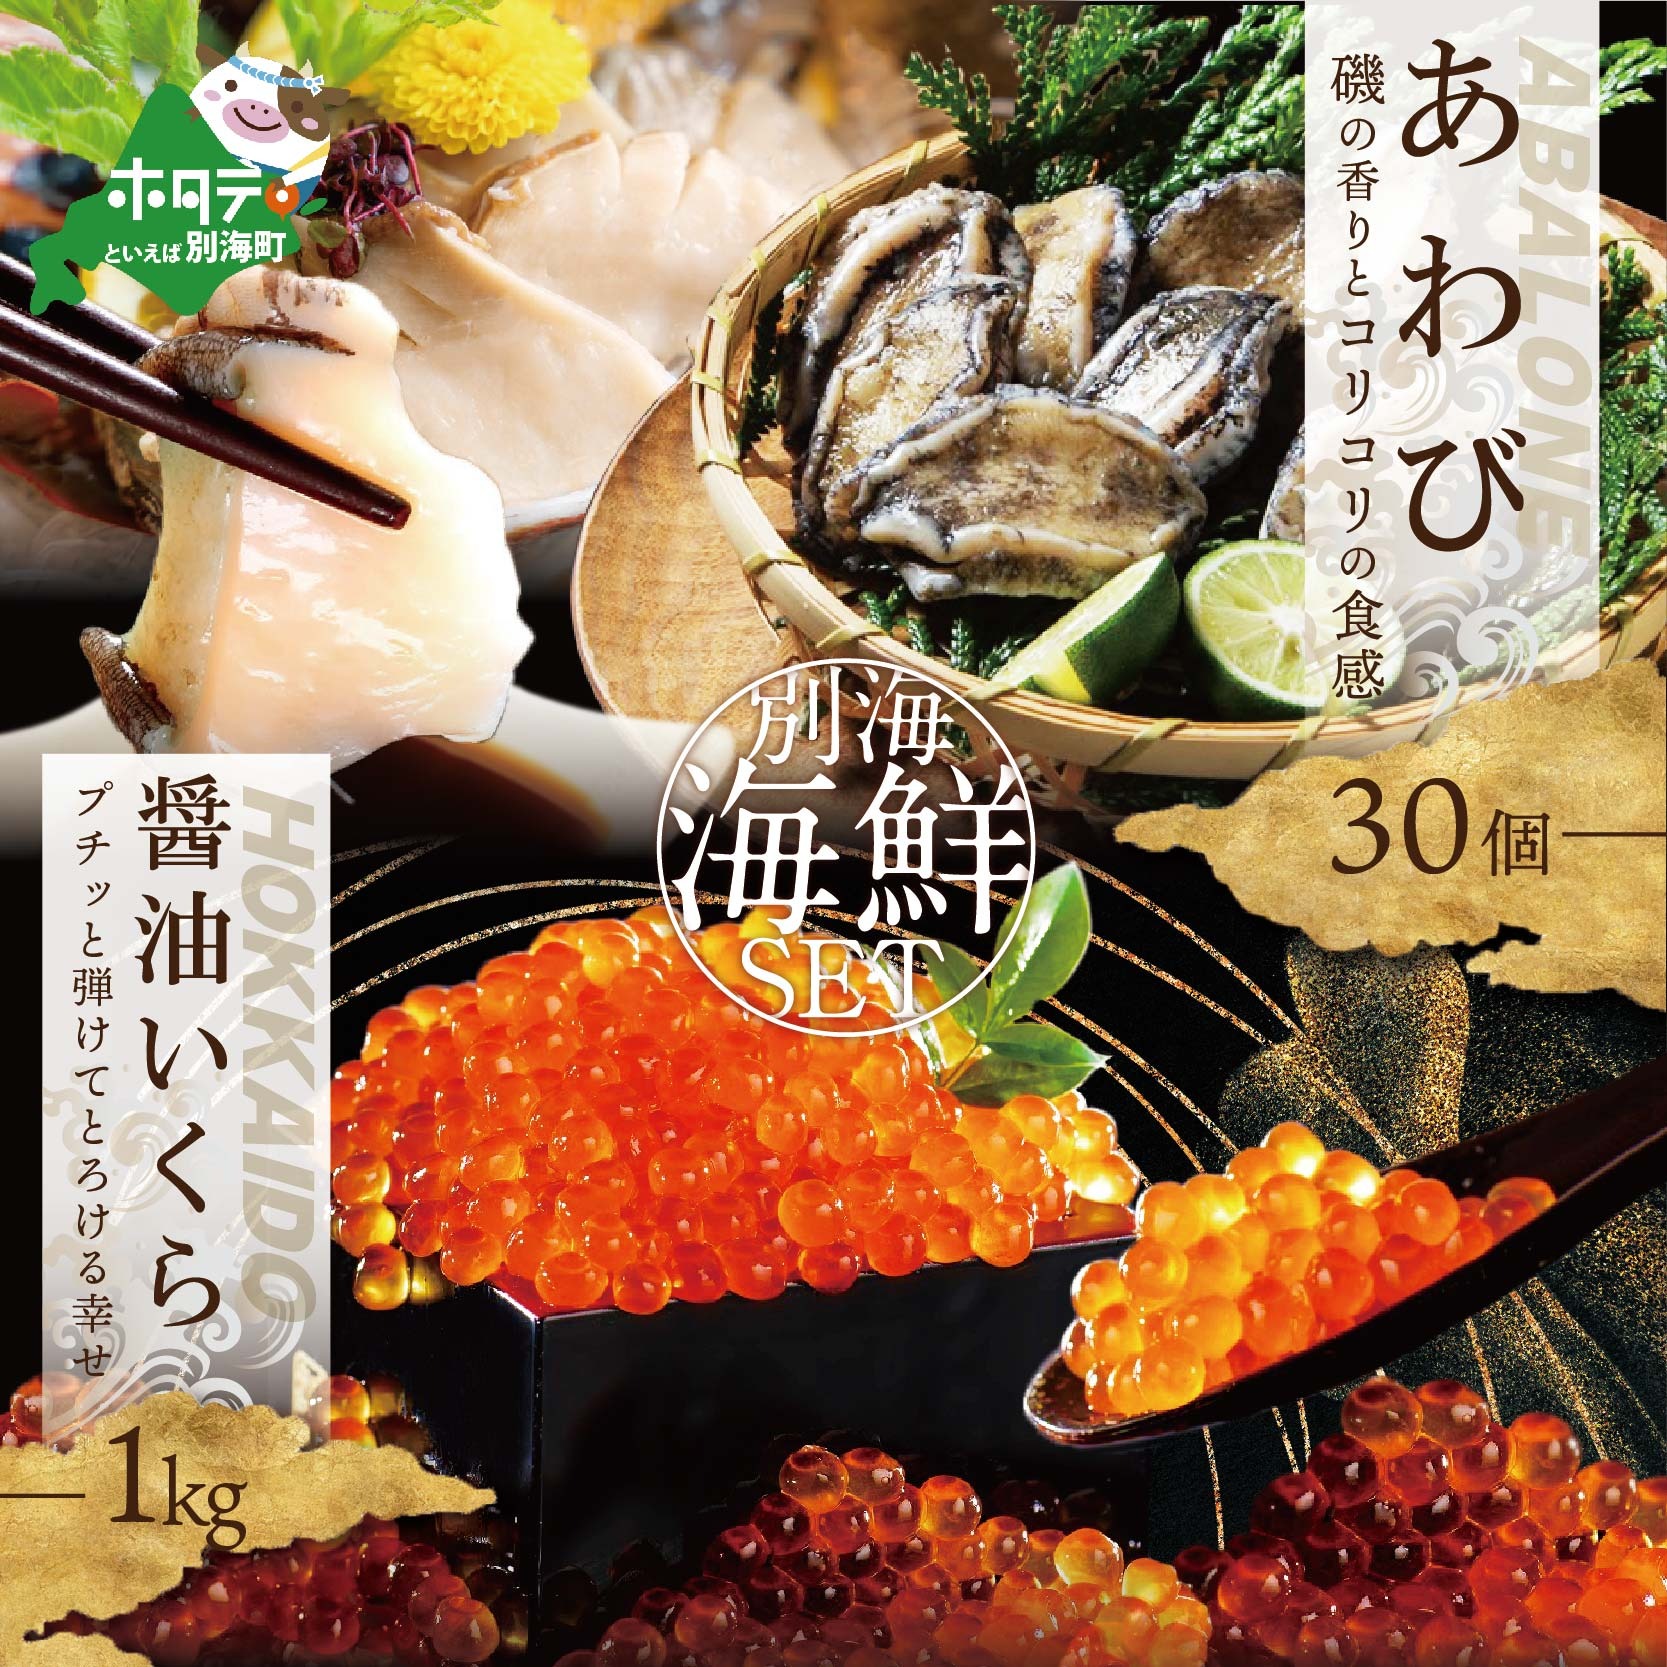 アワビ ･ いくら 海鮮セット アワビ 30個 + 北海道産醤油いくら1kg 